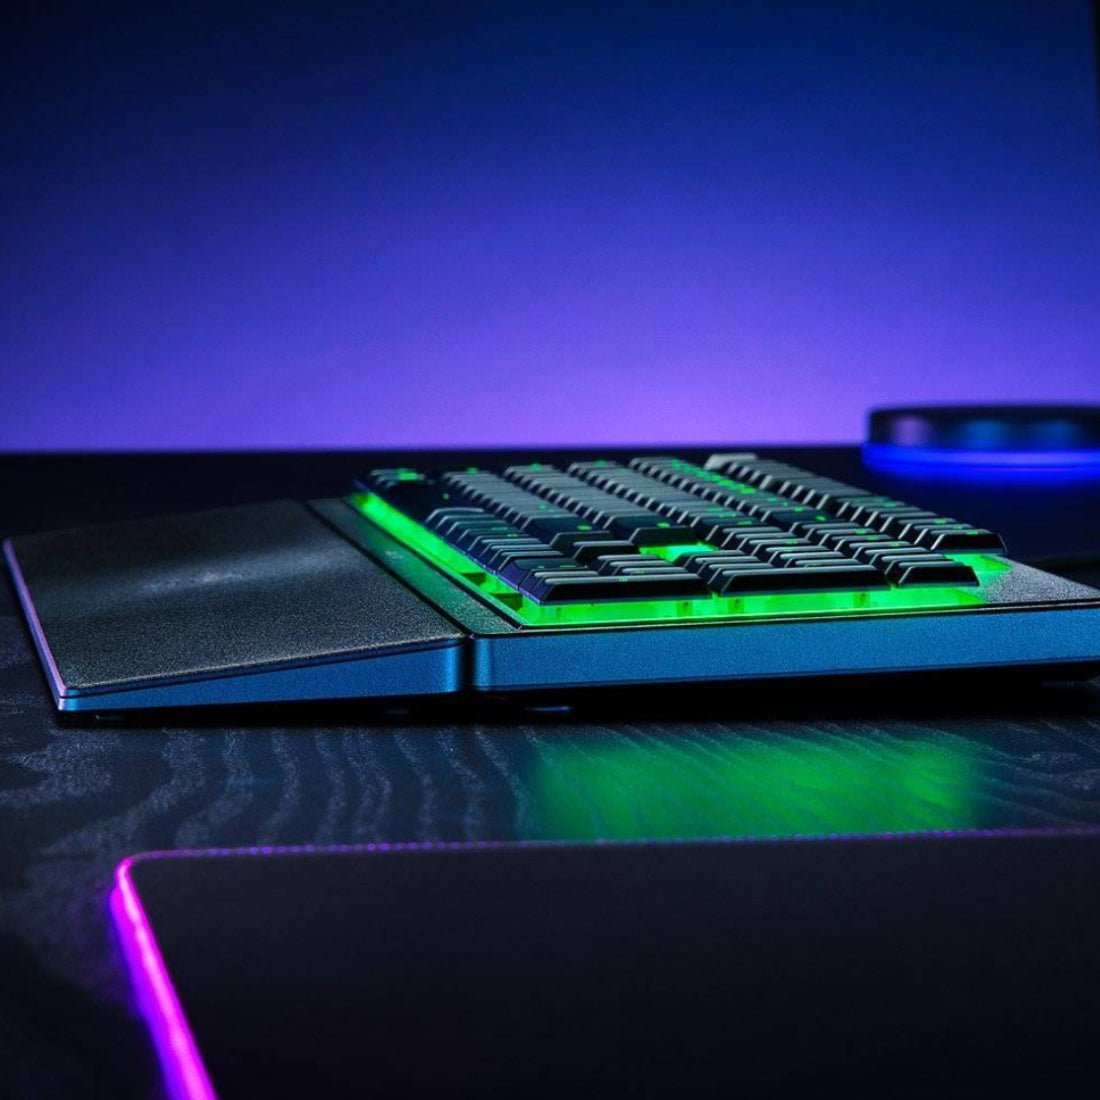 Razer Ornata V3 X RGB Wired Gaming Keyboard - Black - Store 974 | ستور ٩٧٤